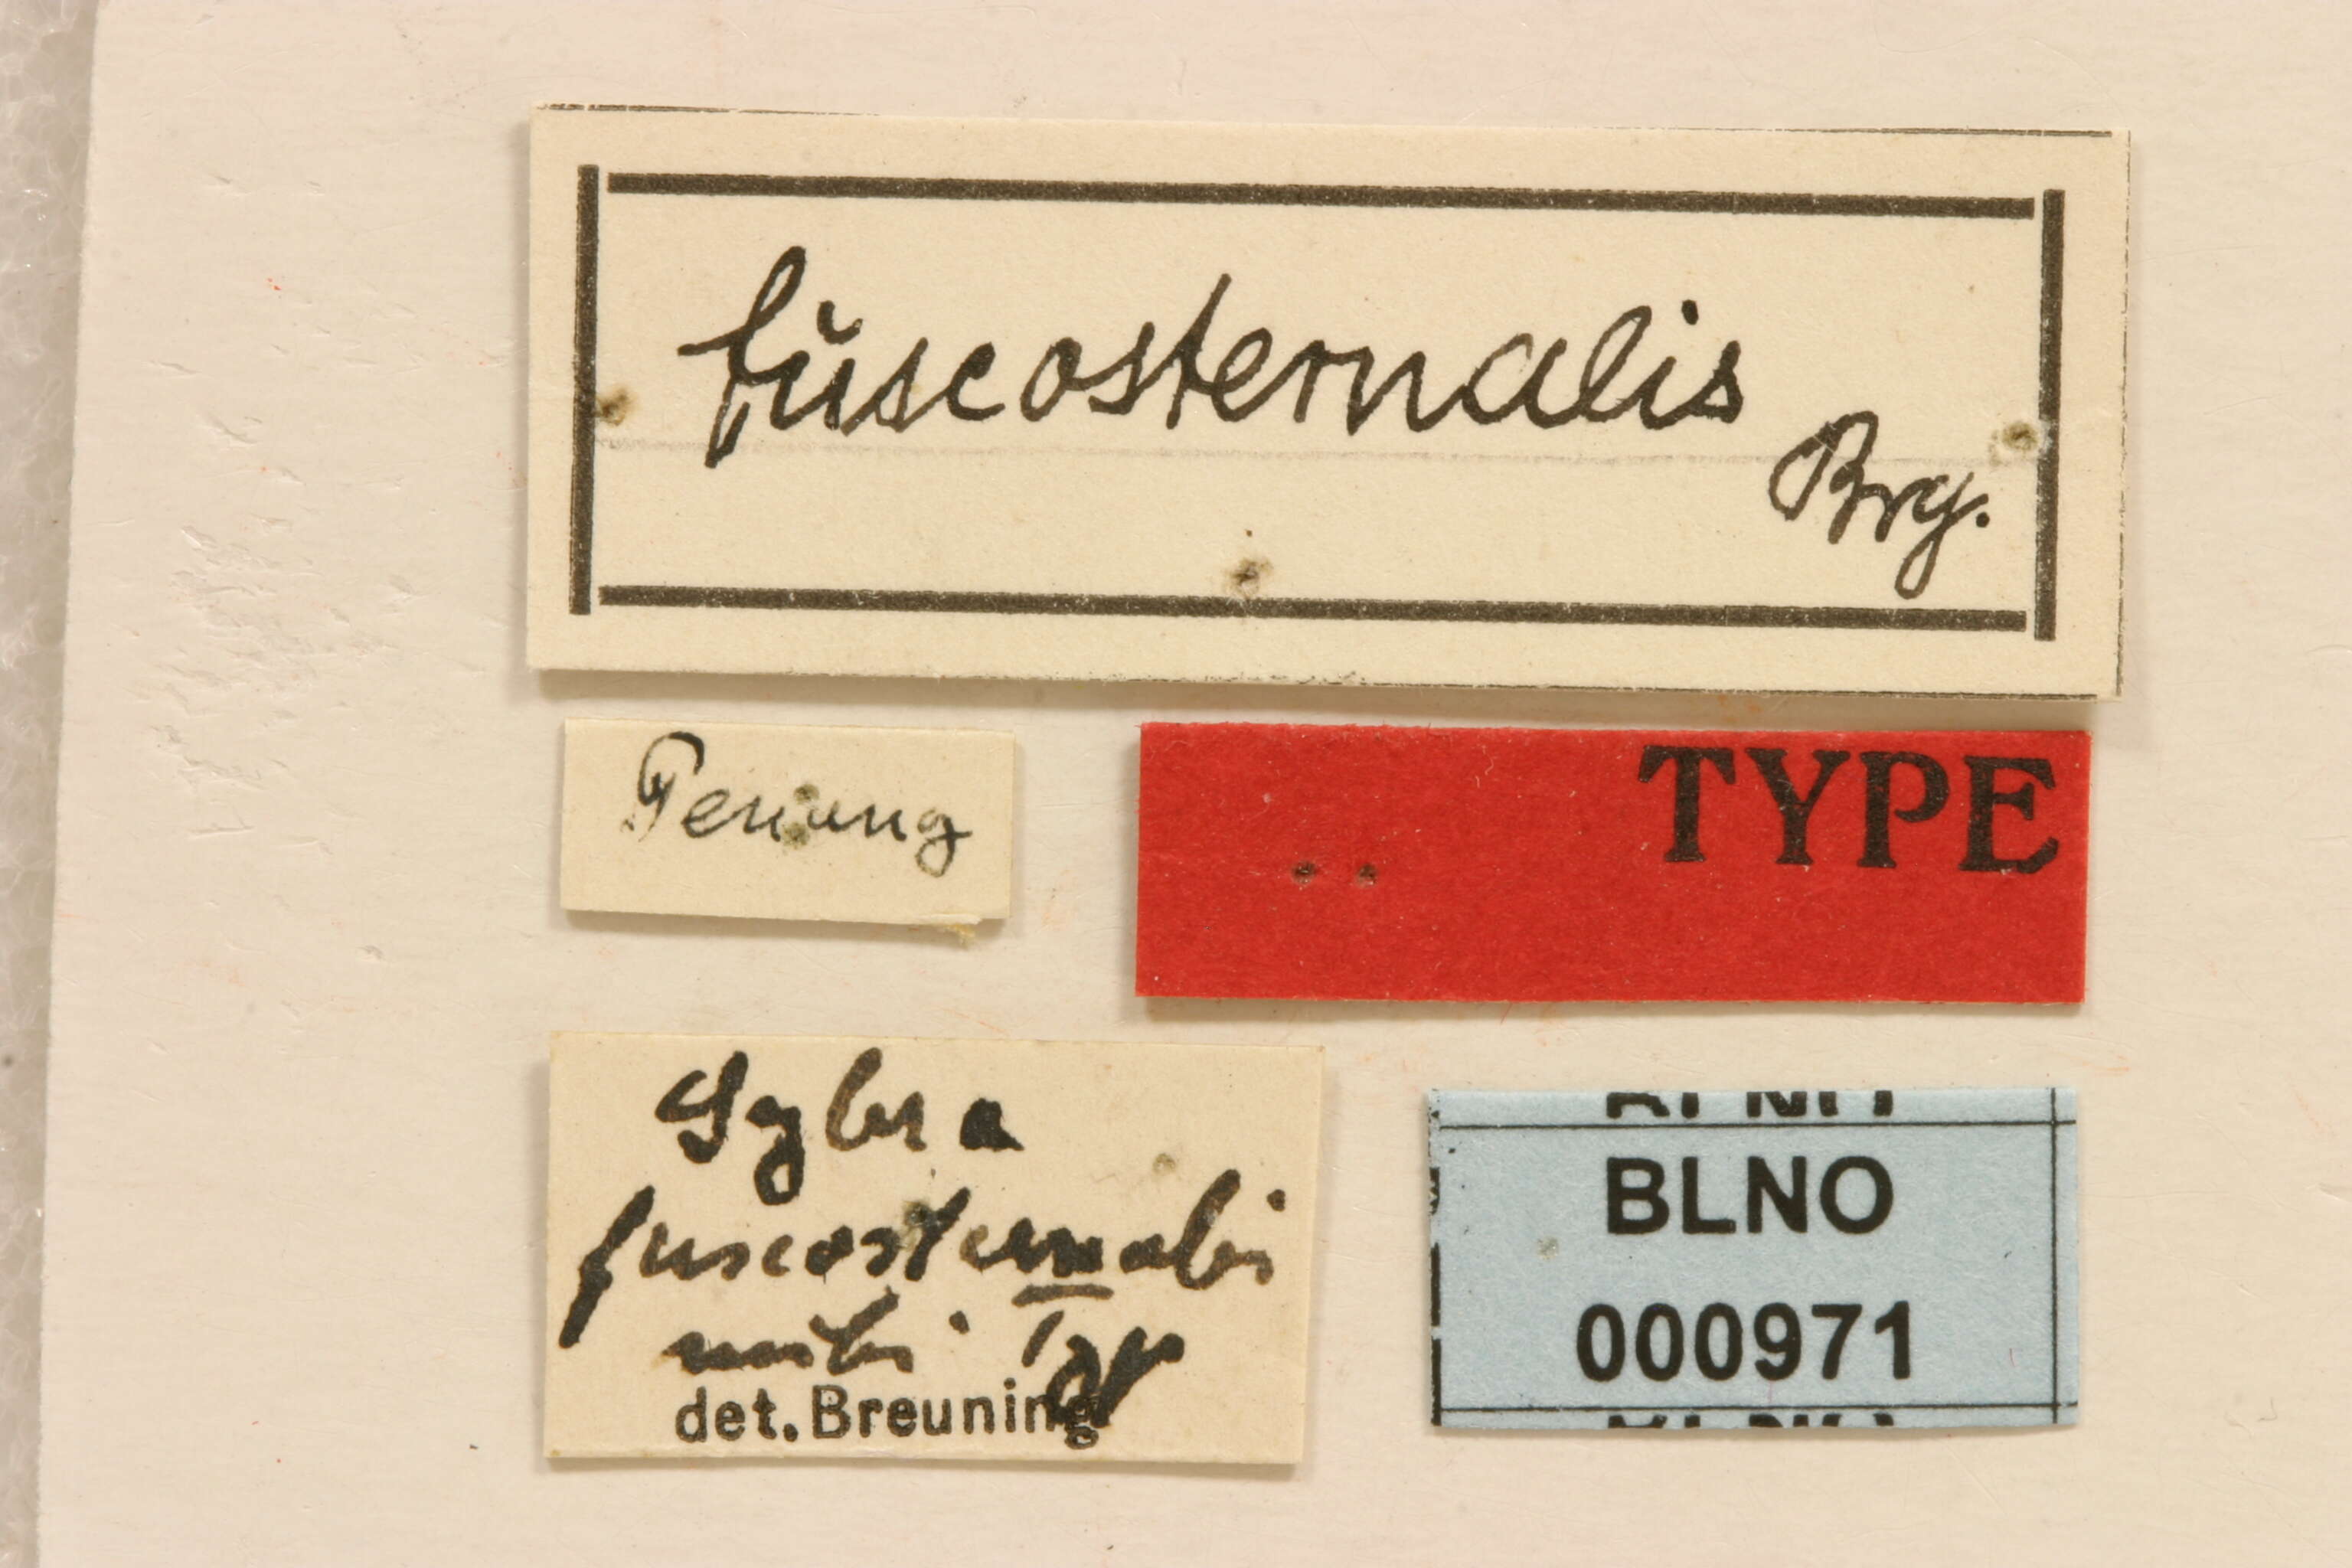 Mycerinopsis fuscosternalis (Breuning 1942) resmi